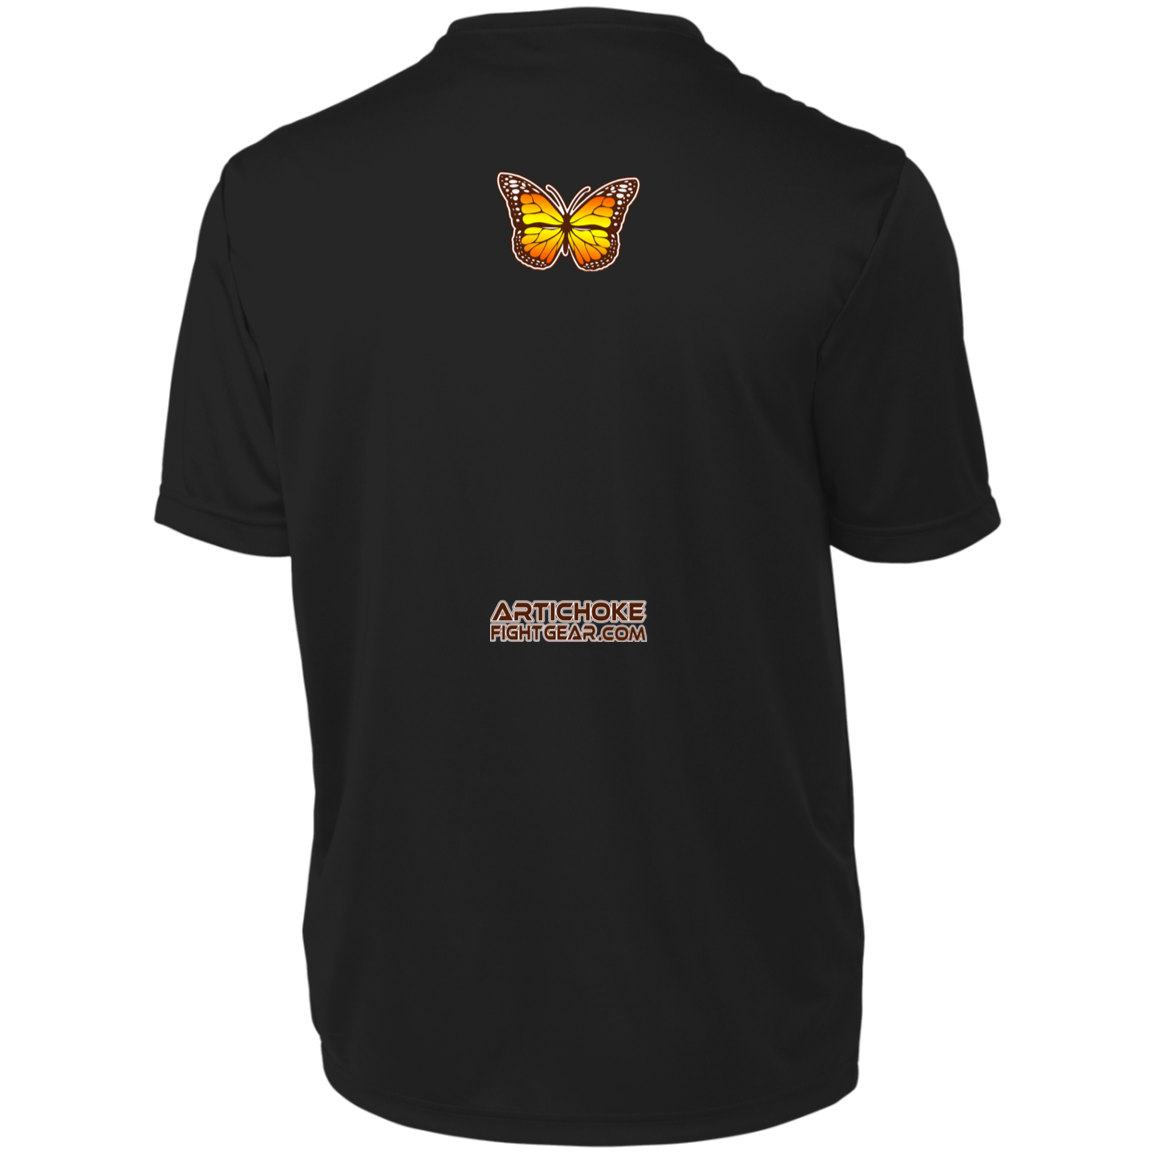 Artichoke Fight Gear Custom Design #6. Lepidopterology (Study of butterflies). Butterfly Guard. Youth Moisture-Wicking Tee